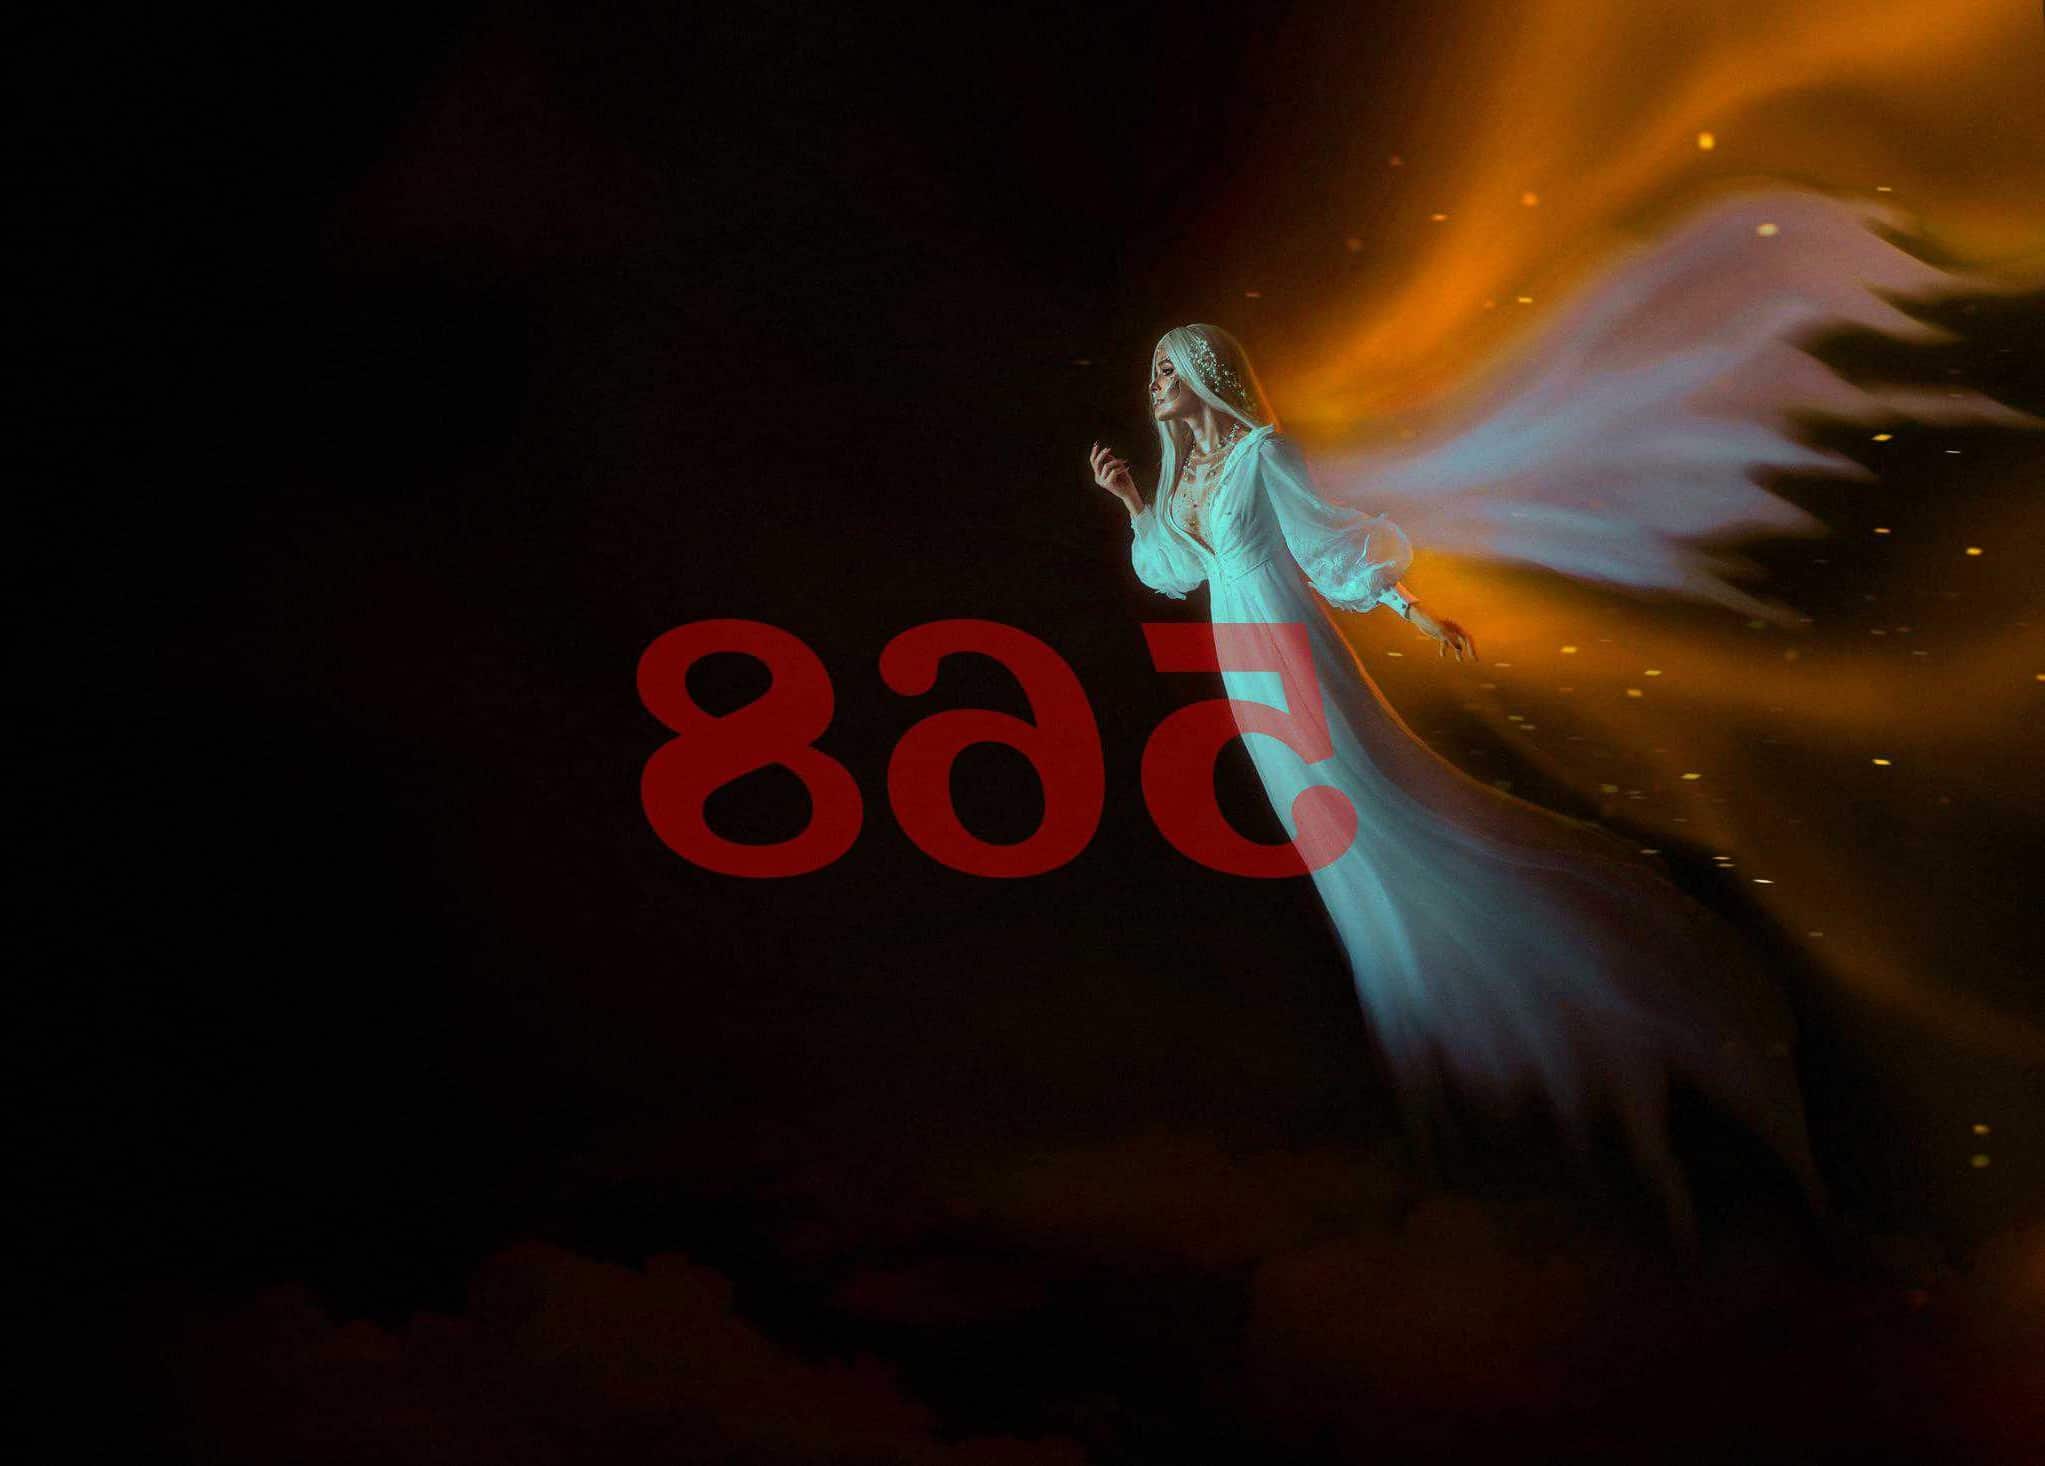 Número de ángel 568 Significado de numerología